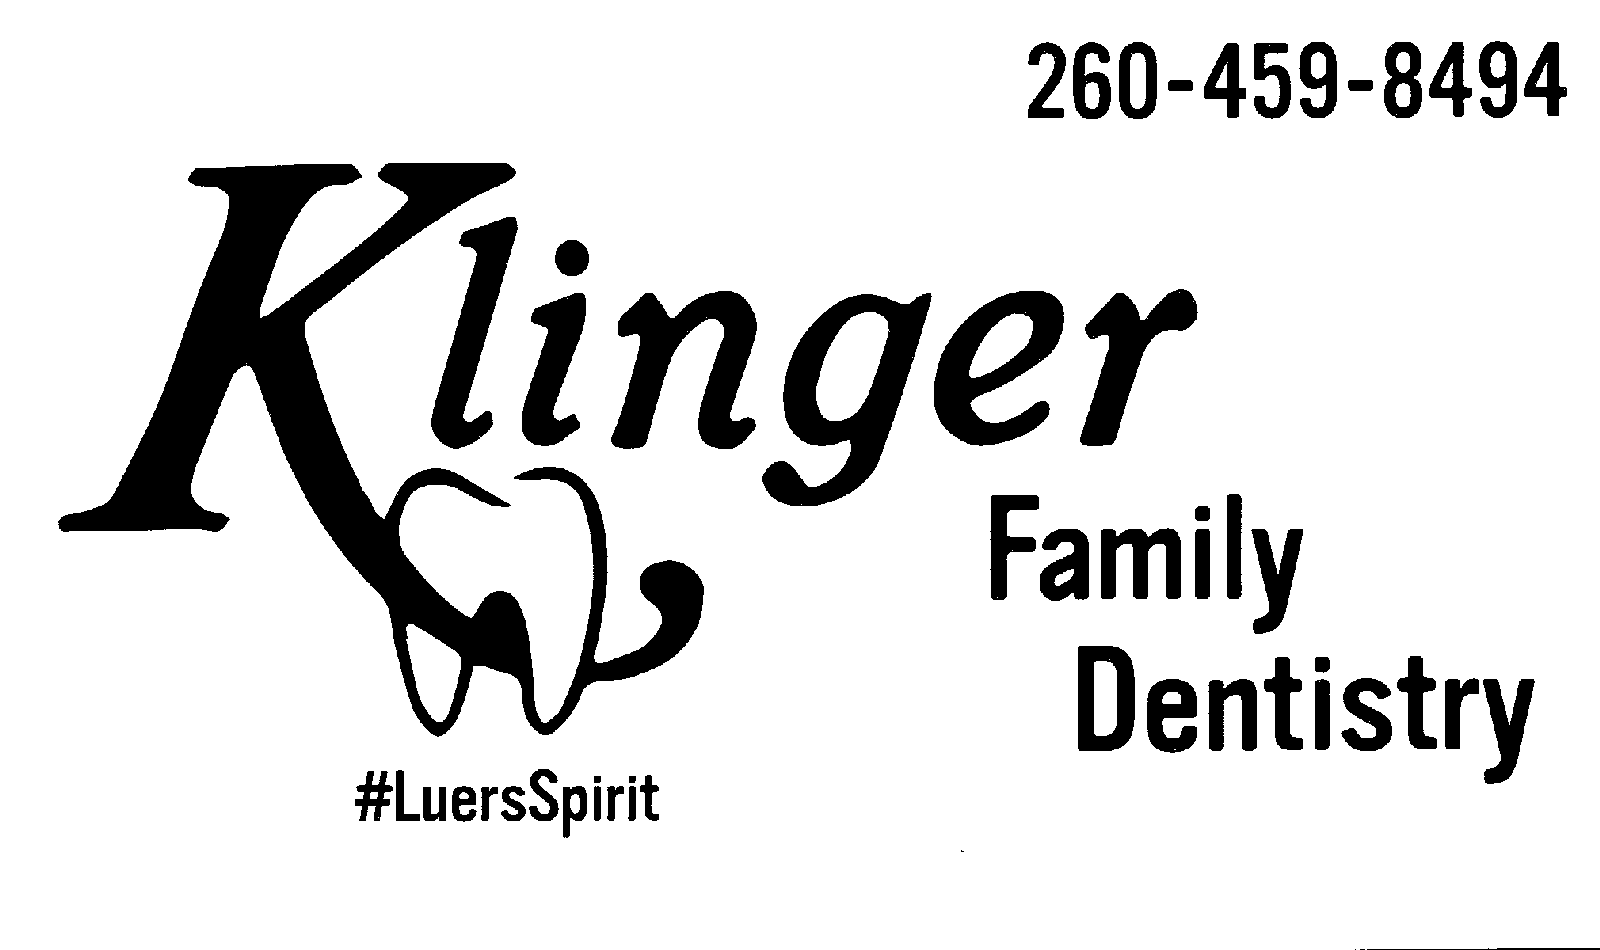 KLINGER FAMILY DENTISTRY